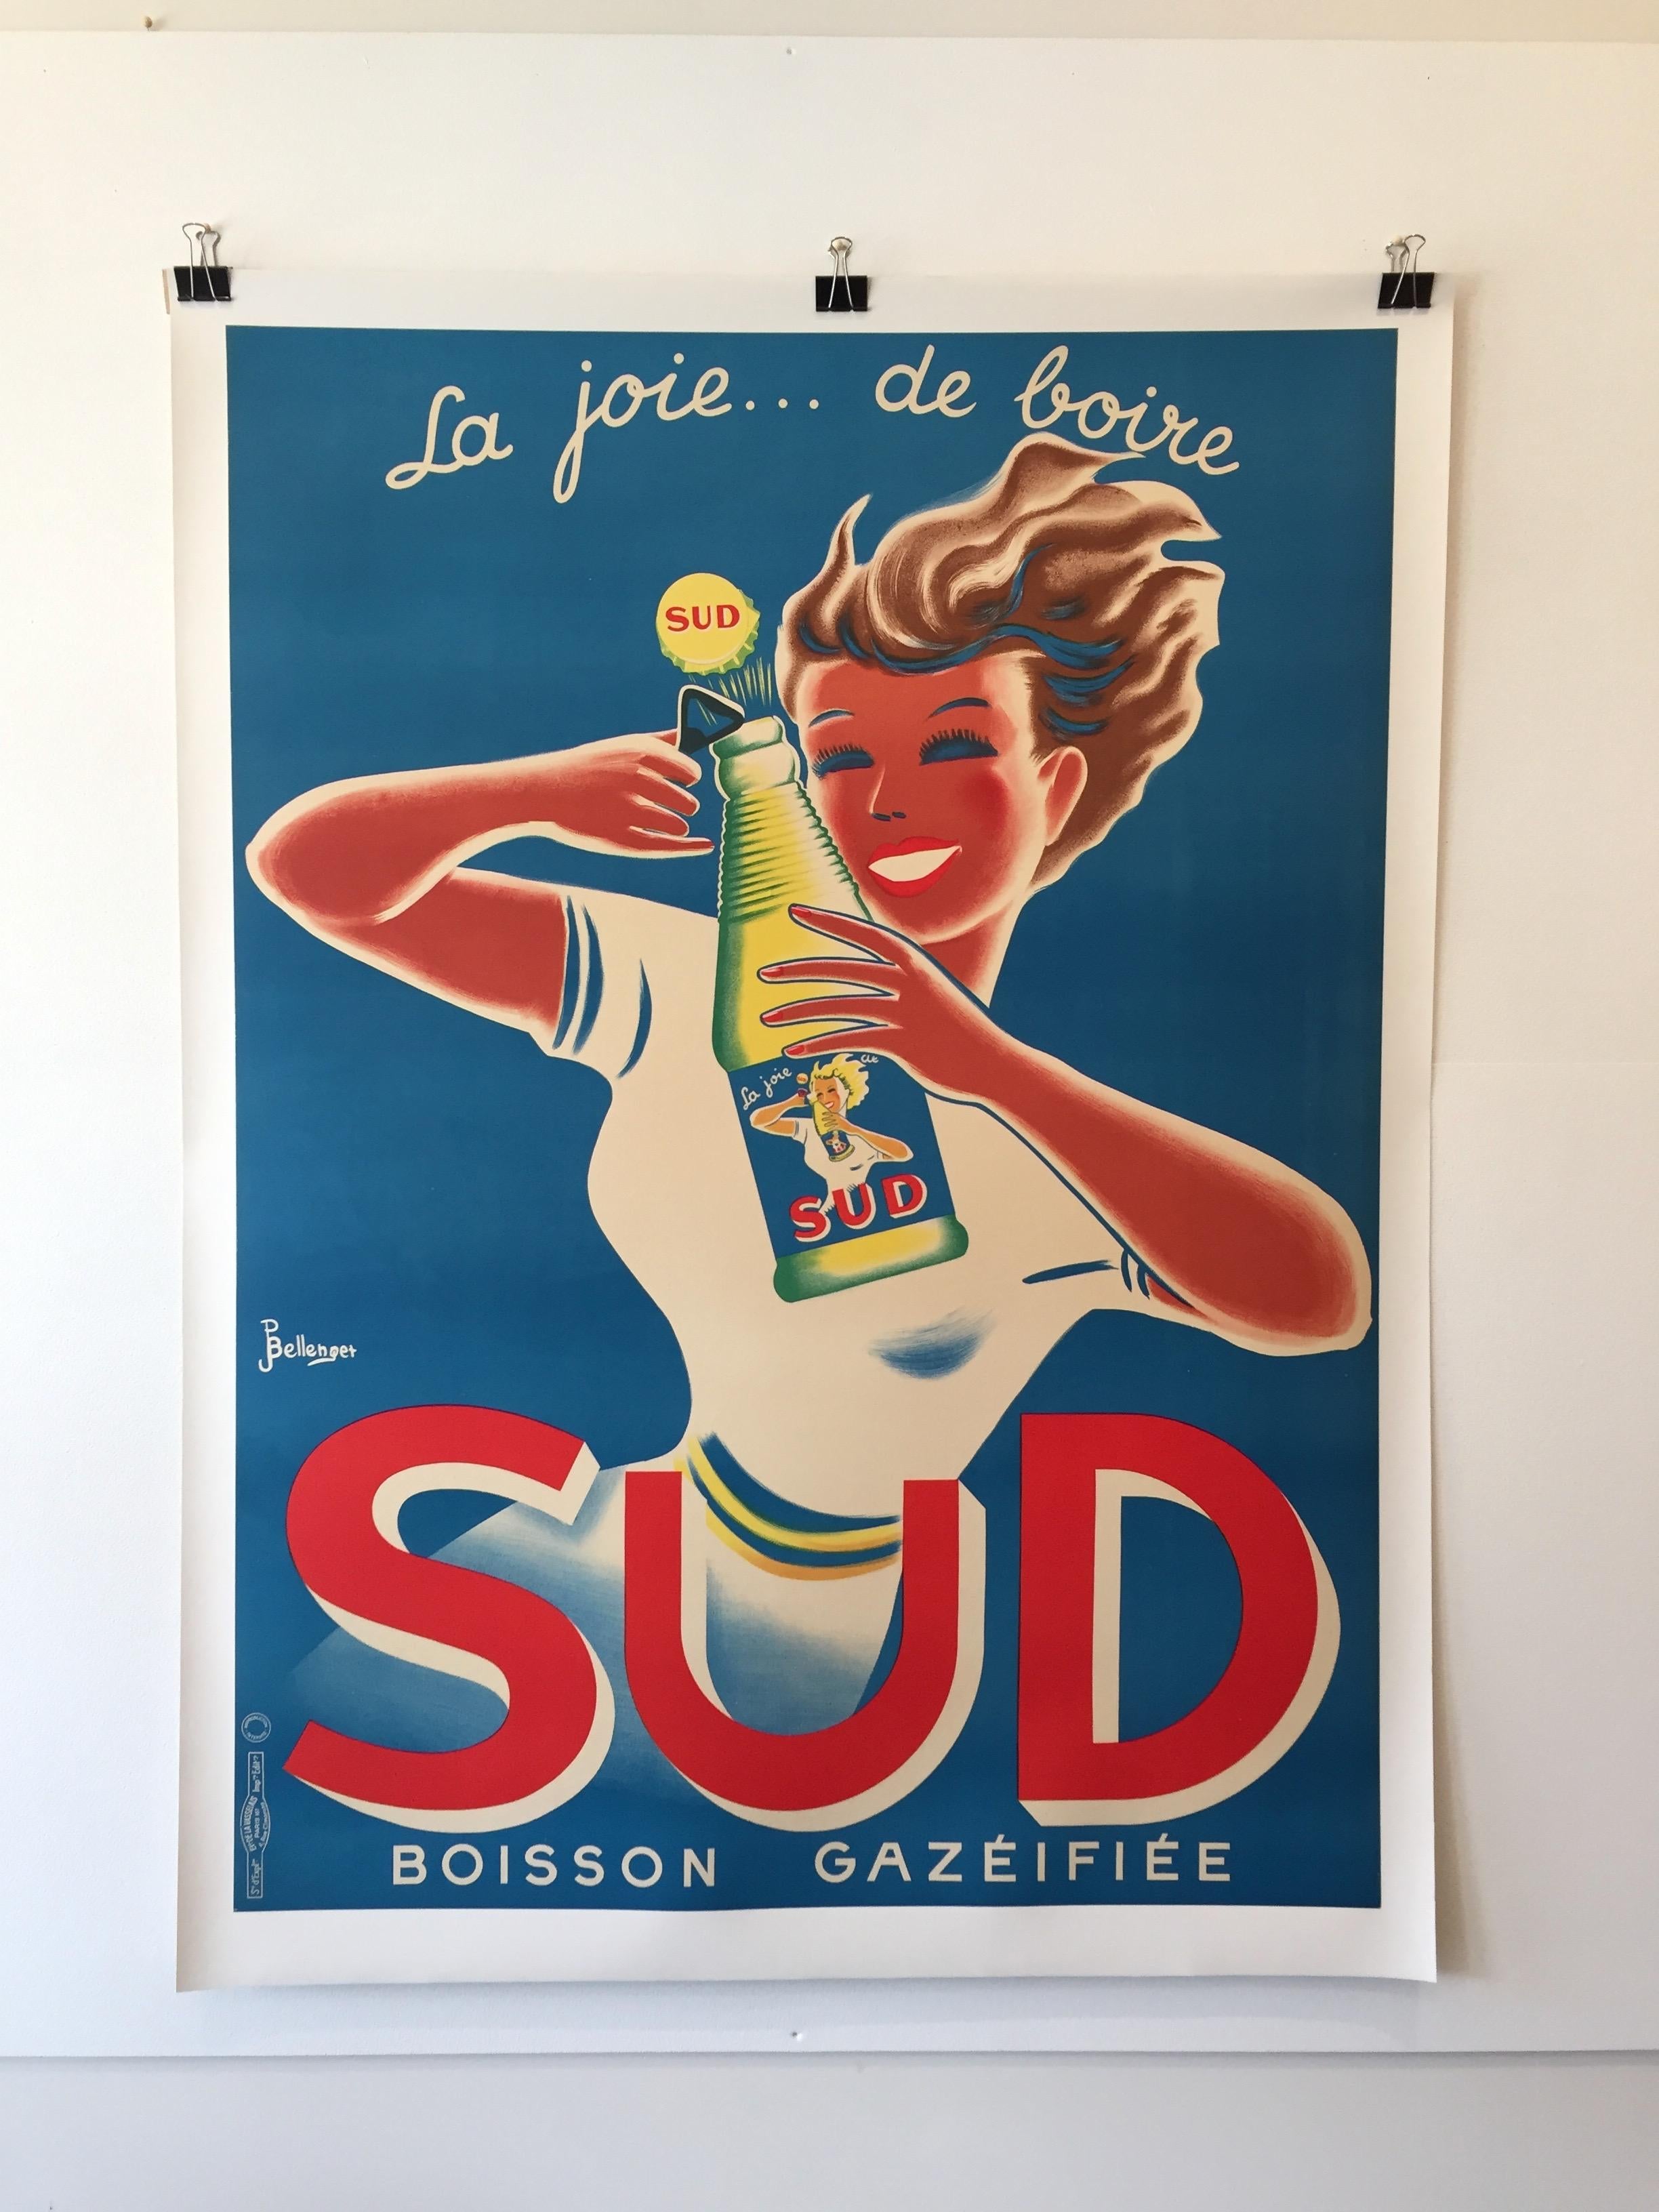 Art Deco originales französisches lithographiertes Plakat, 'SUD' von Bellenger, 1940

Ein charmantes Plakat aus den 1940er Jahren von dem bekannten französischen Künstler Bellenger. 

Jahr
1940

Abmessungen
123 x